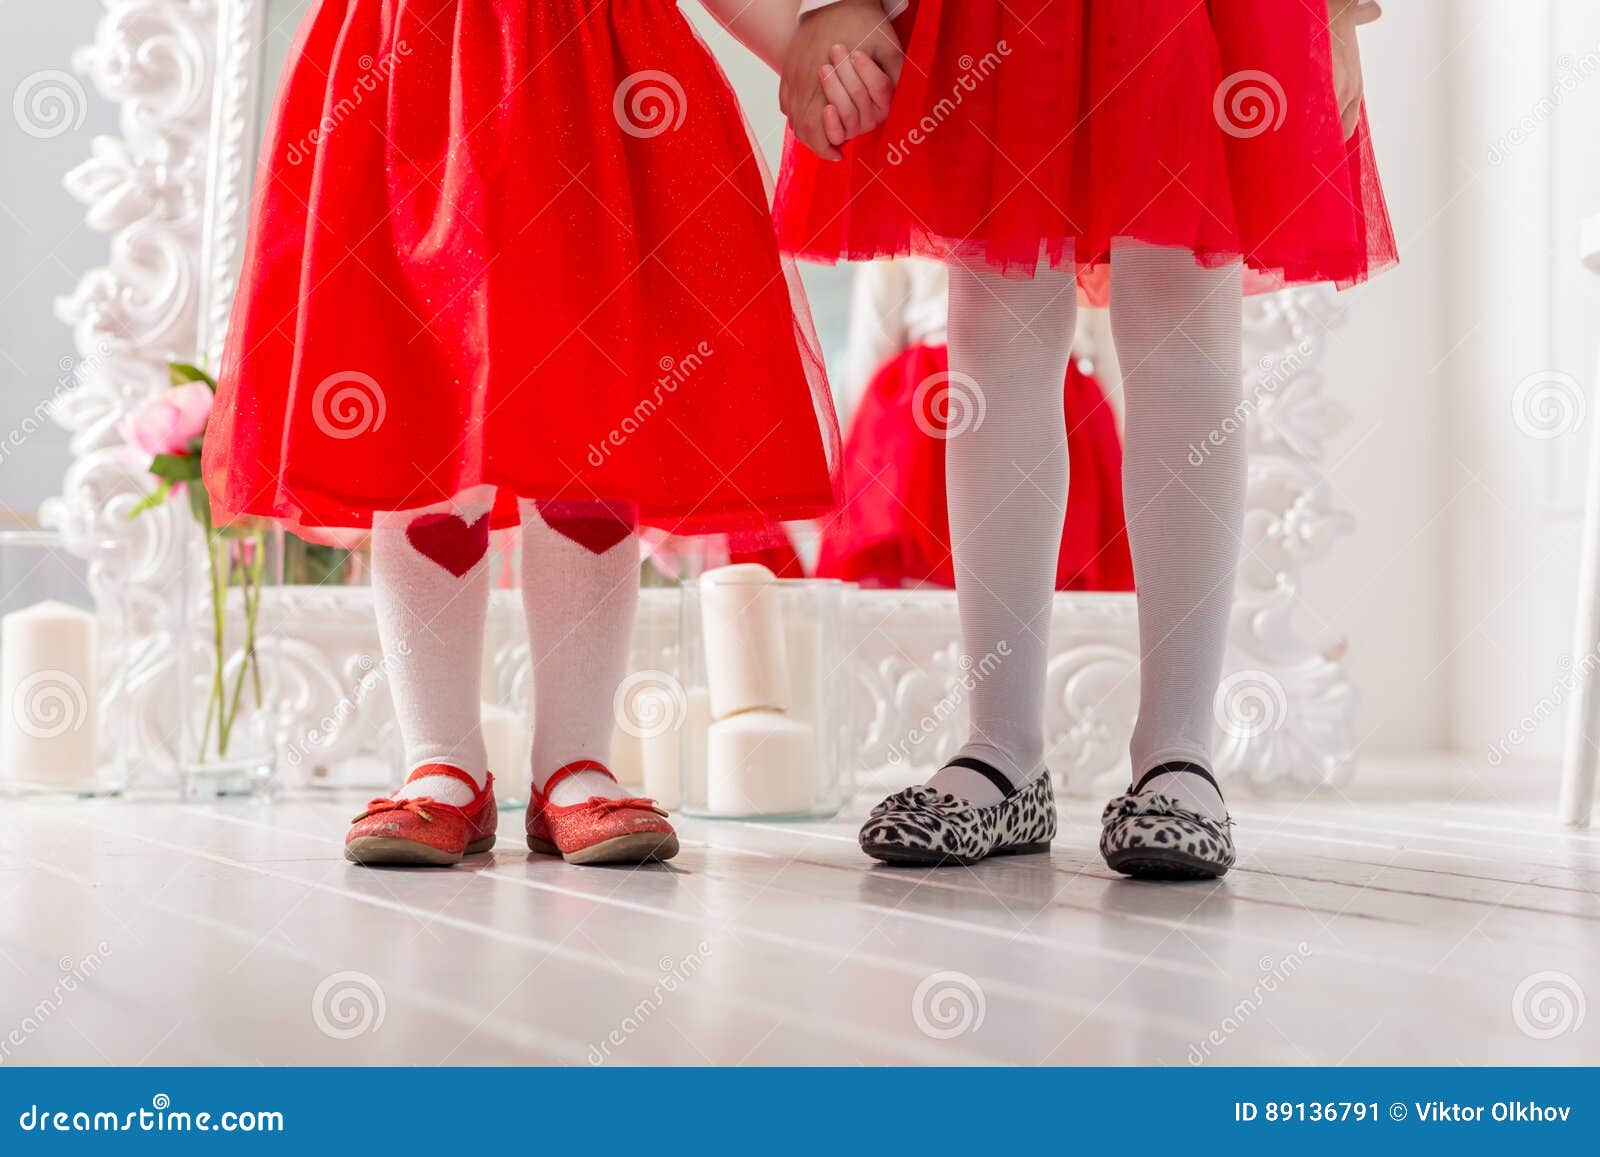 Piernas En Zapatos Dos Niñas En Vestidos Rojos Imagen de archivo - Imagen de junto, adulto: